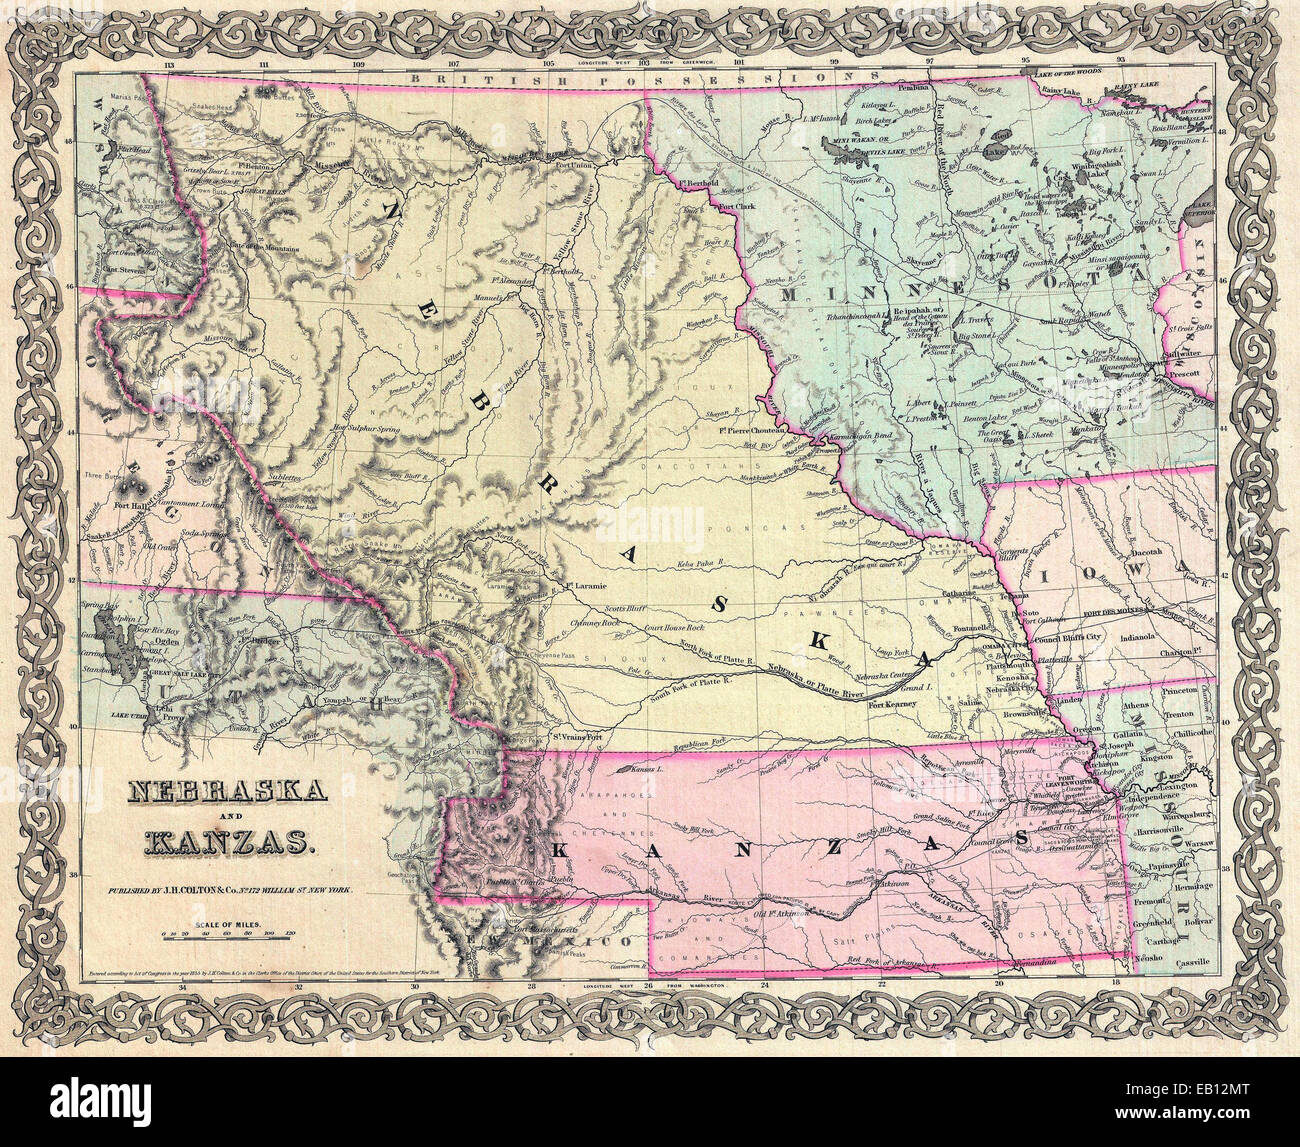 La loi du Kansas Kansas Nebraska-organisé (en rose) et le Territoire du Nebraska (jaune). 1855 Première édition de Colton's carte des Territoires du Nebraska et du Kansas Banque D'Images